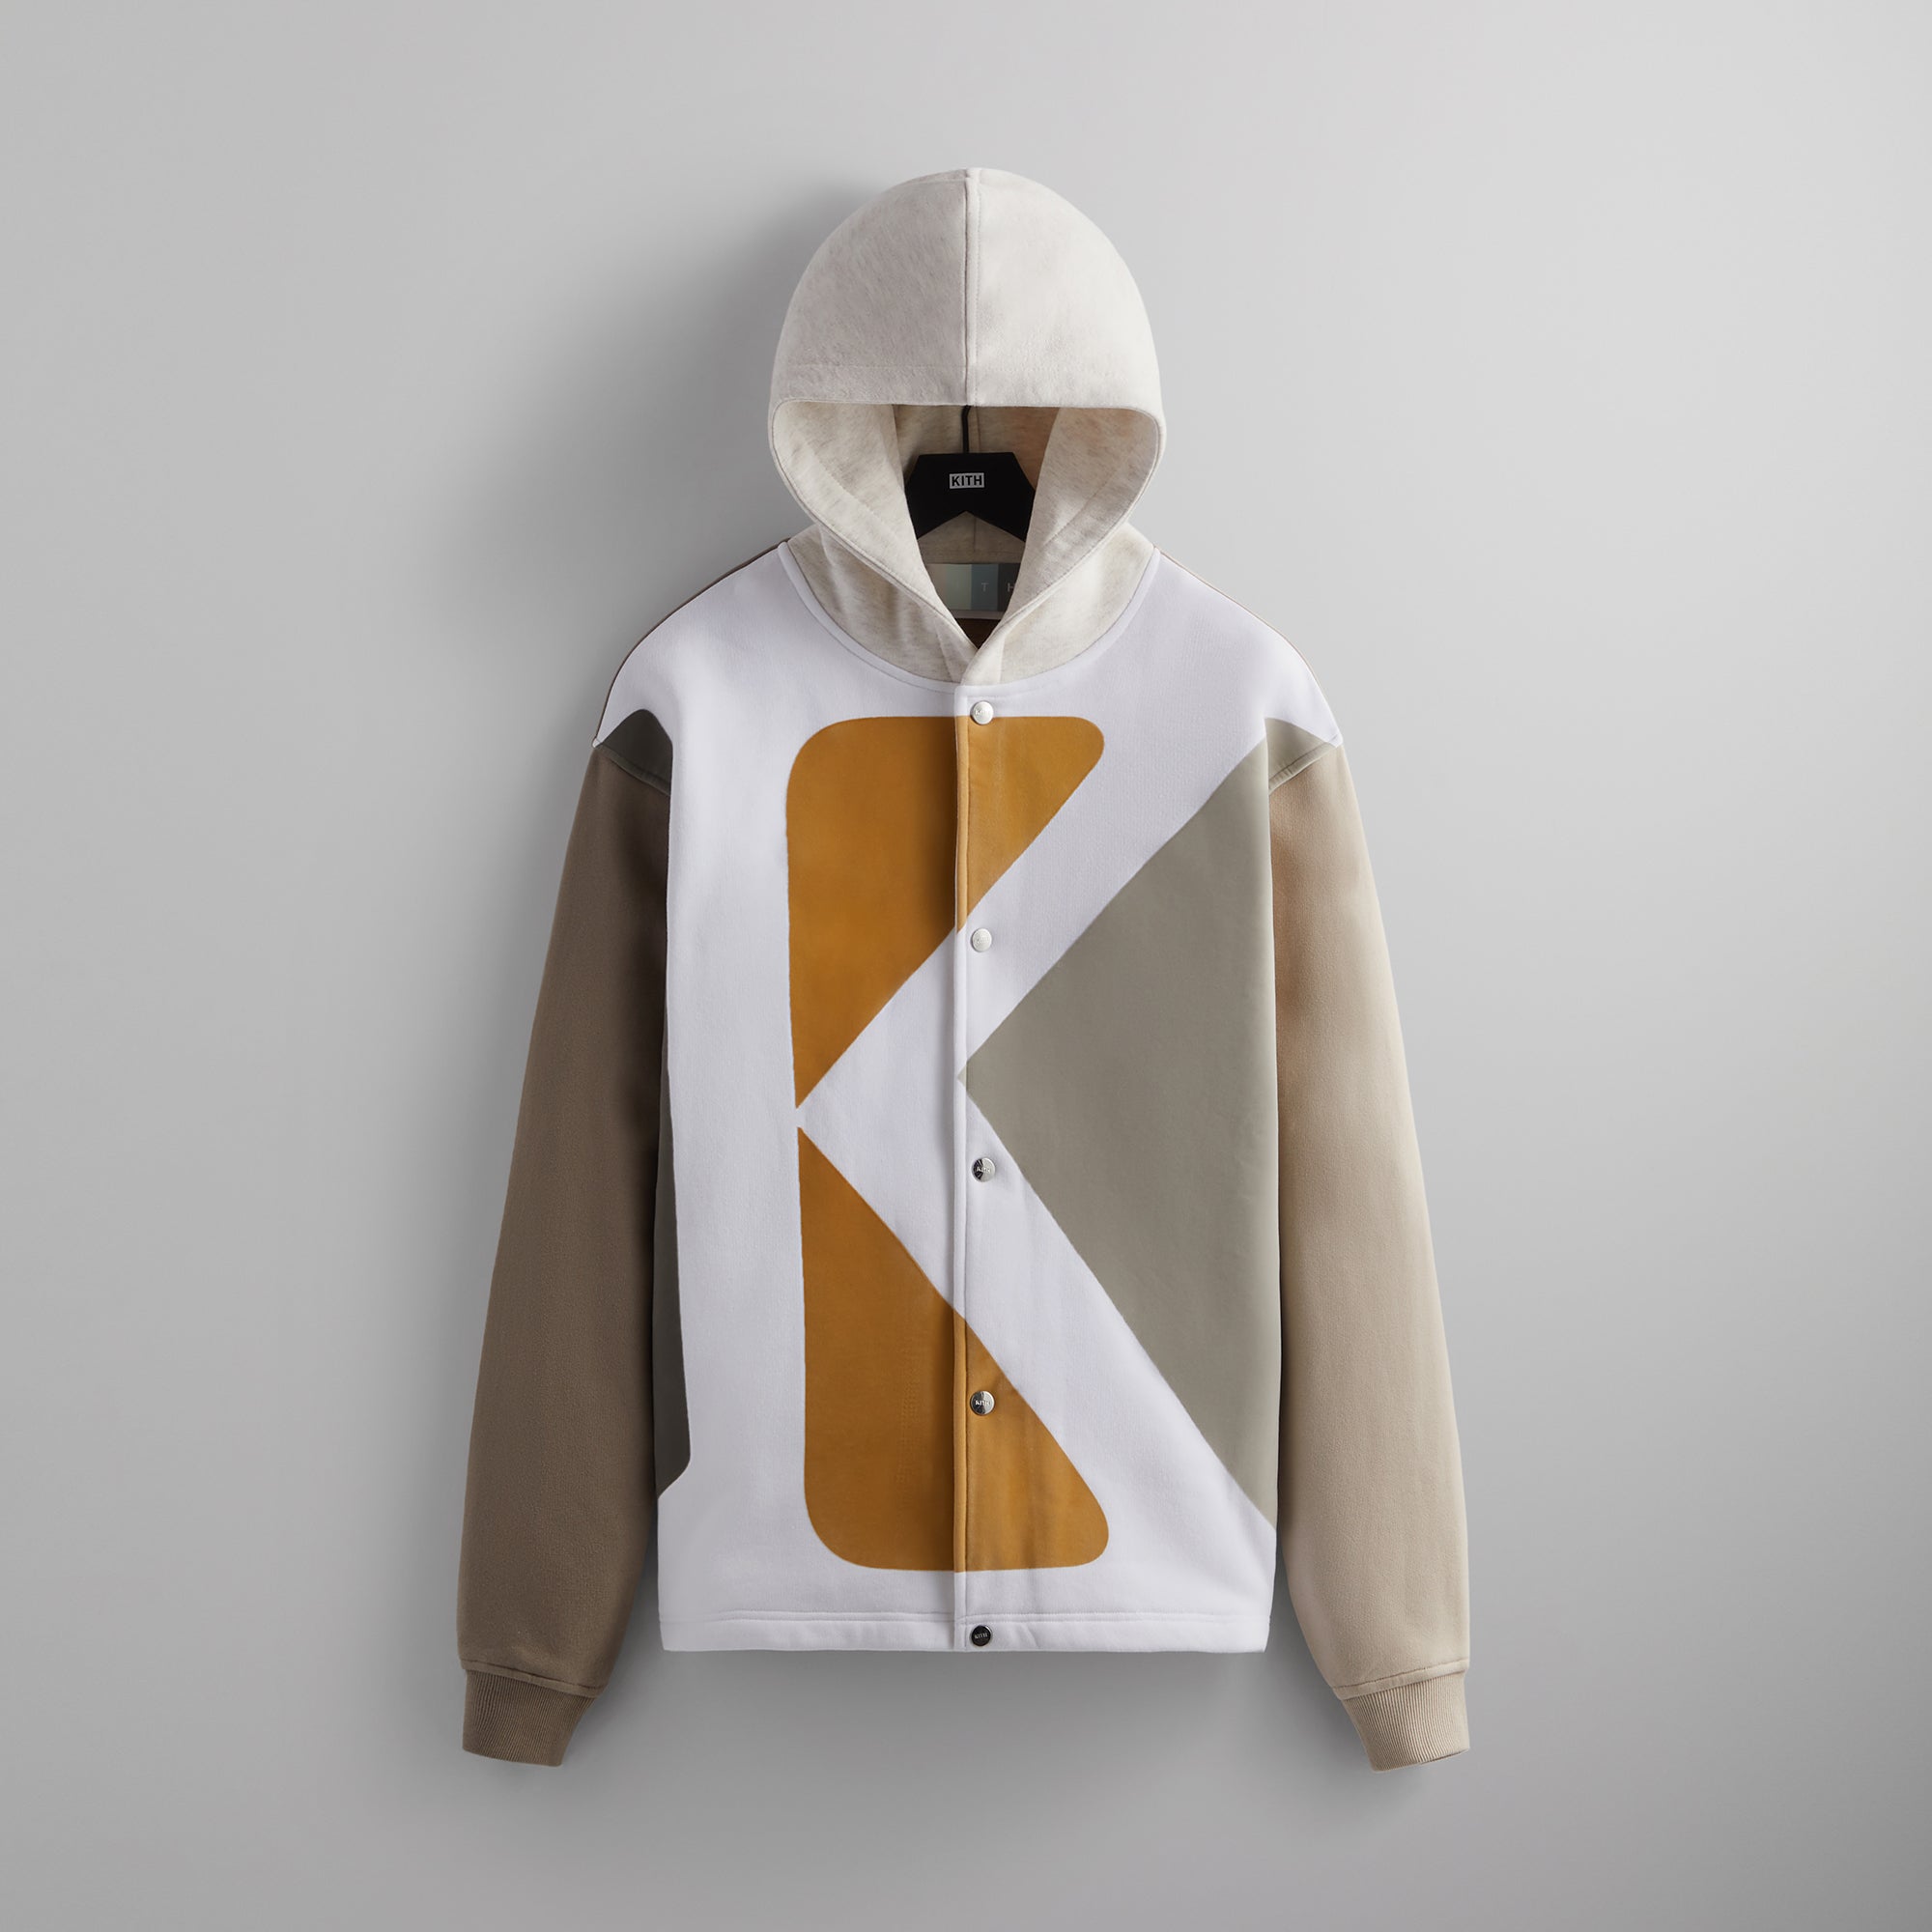 Kith Initial K Hooded Coaches Jacket - Ashlar